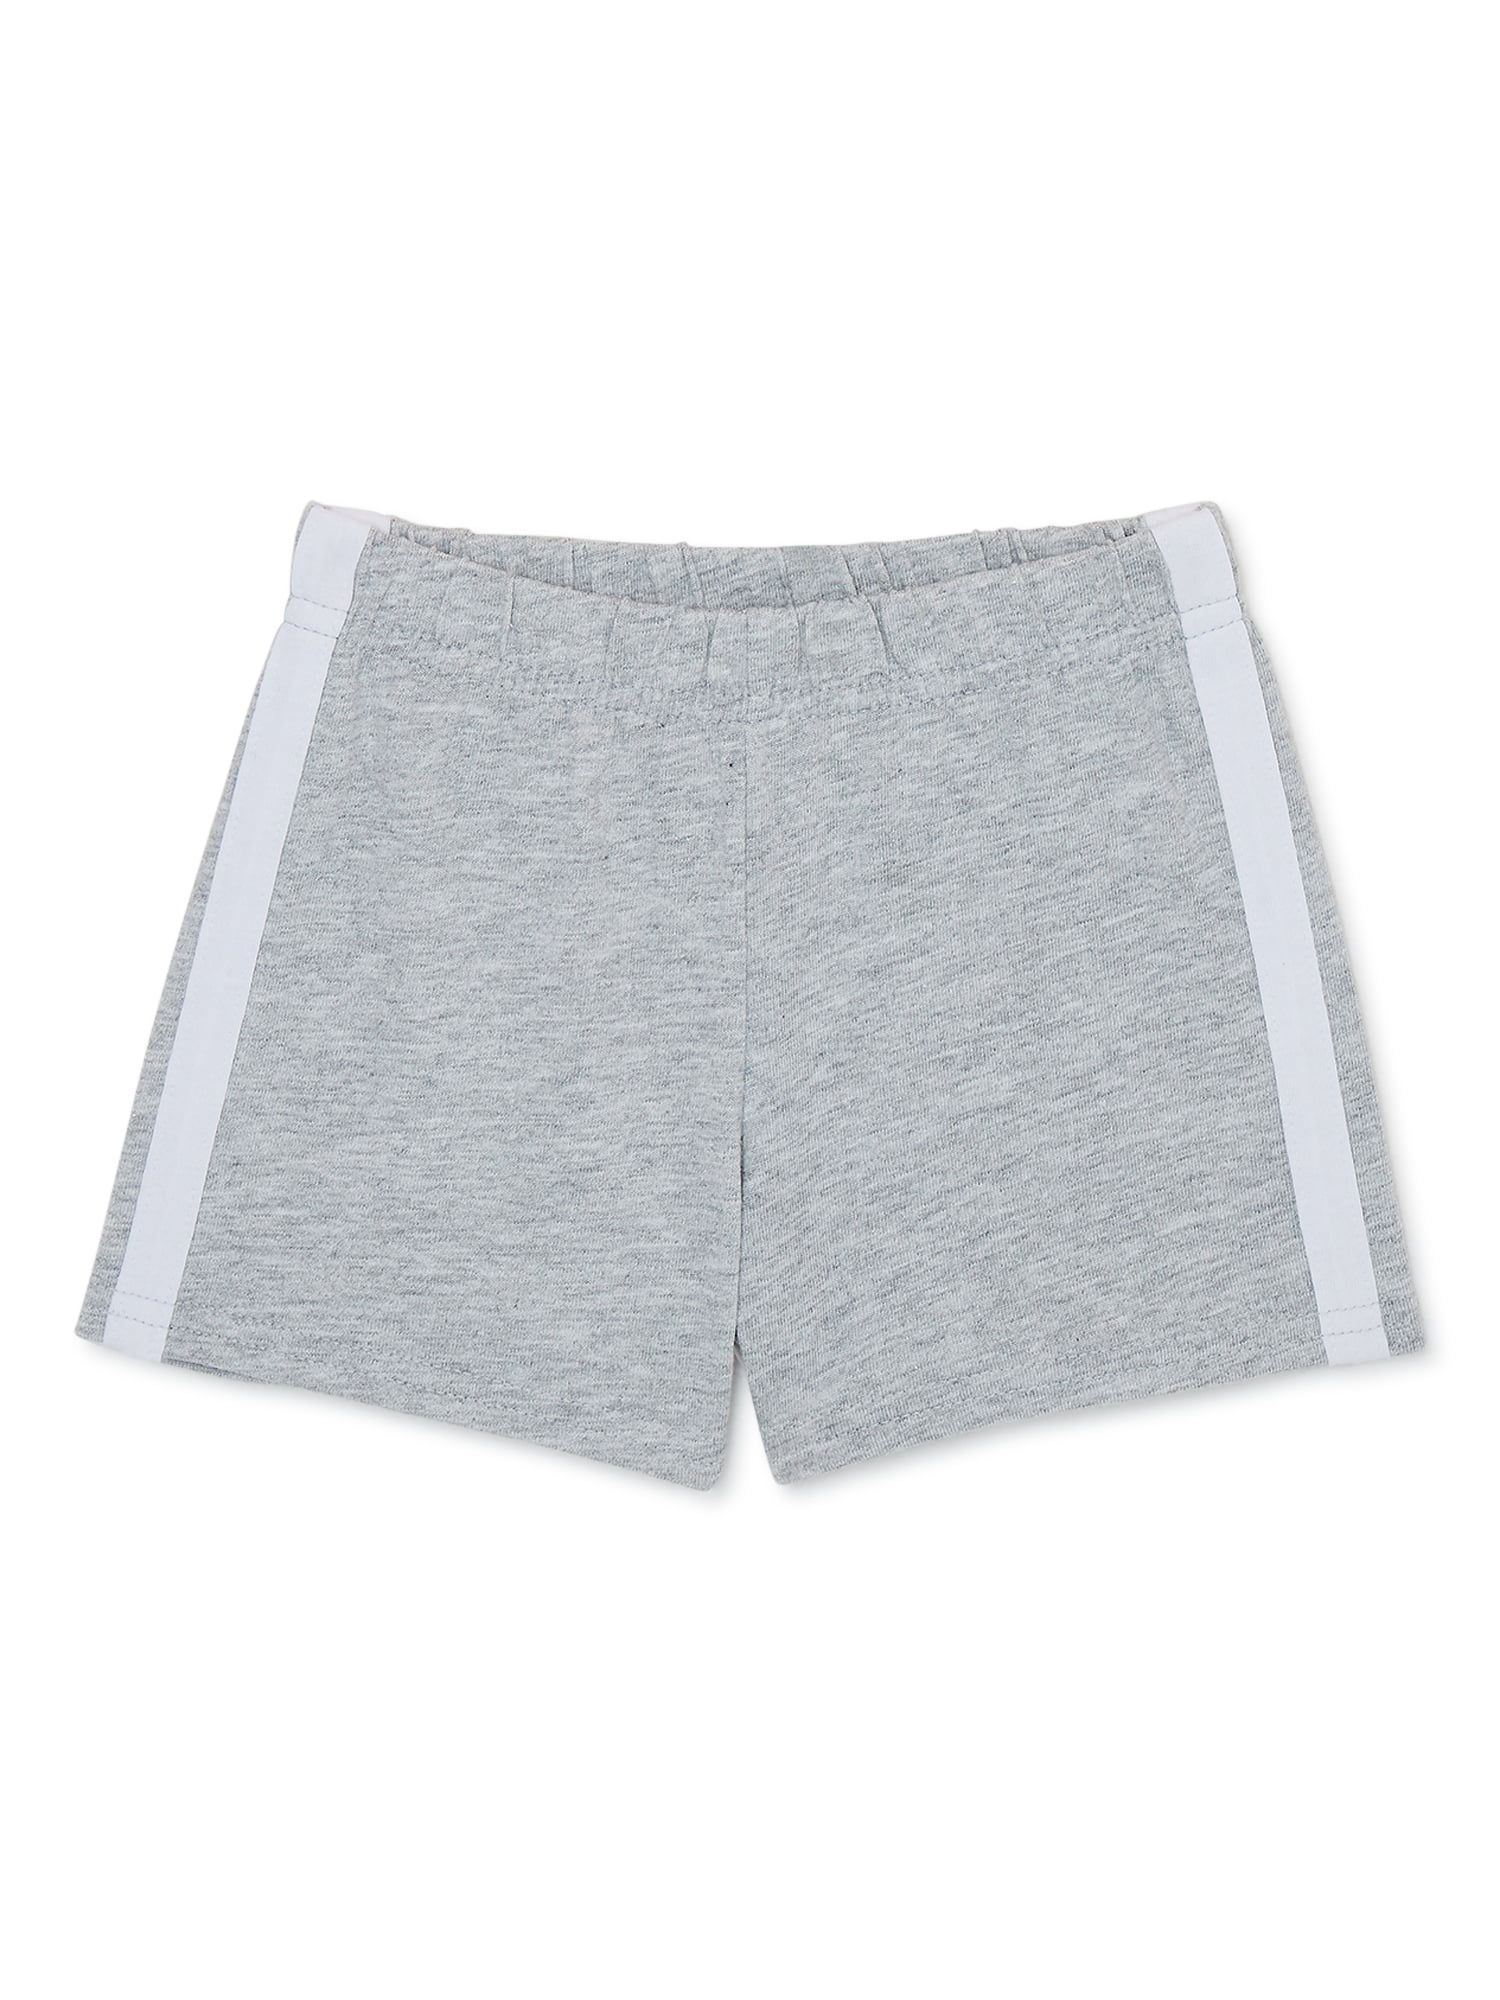 Garanimals Baby Boy Taped Jersey Shorts, Sizes 0-24 Months | Walmart (US)